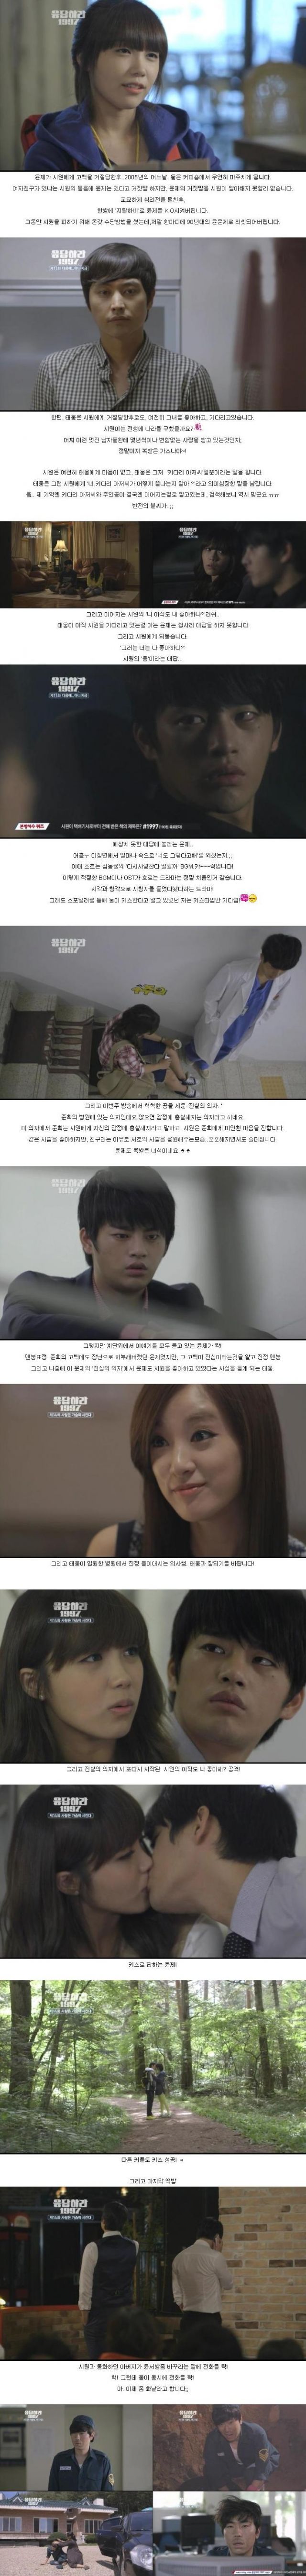 Korean Drama Faith Episode 14 Preview